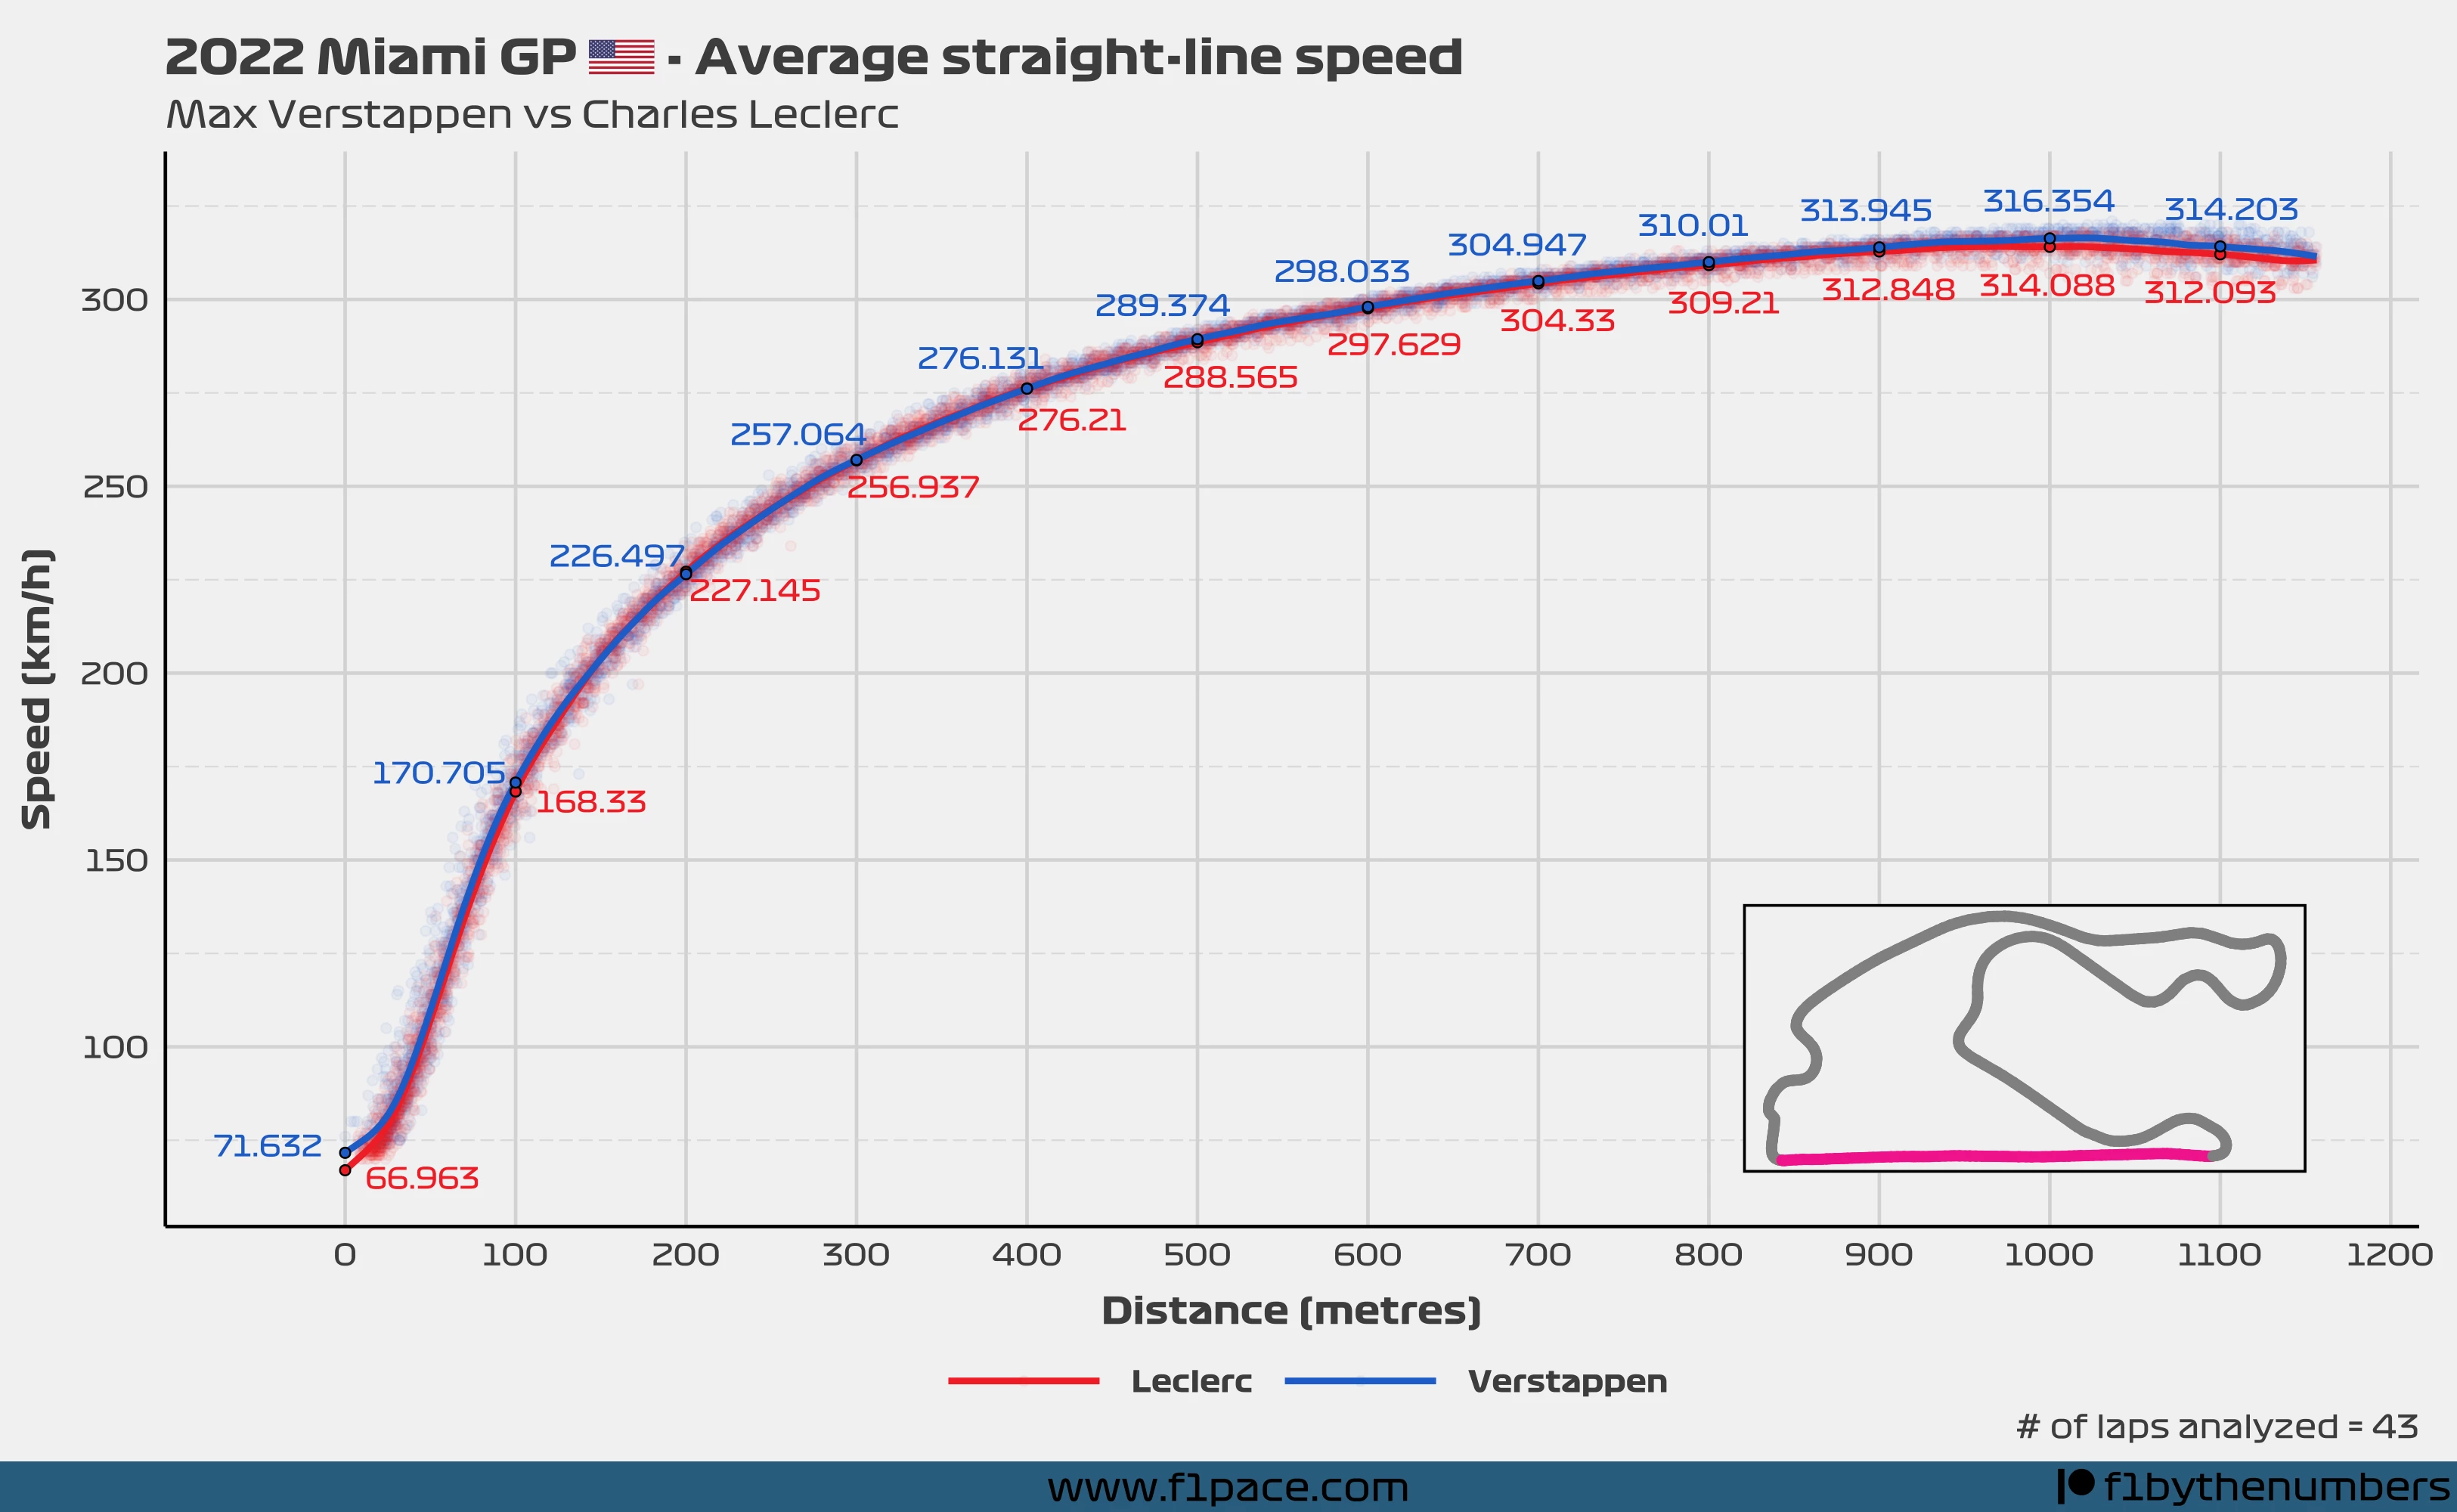 Average straight-line speed - Verstappen vs Leclerc